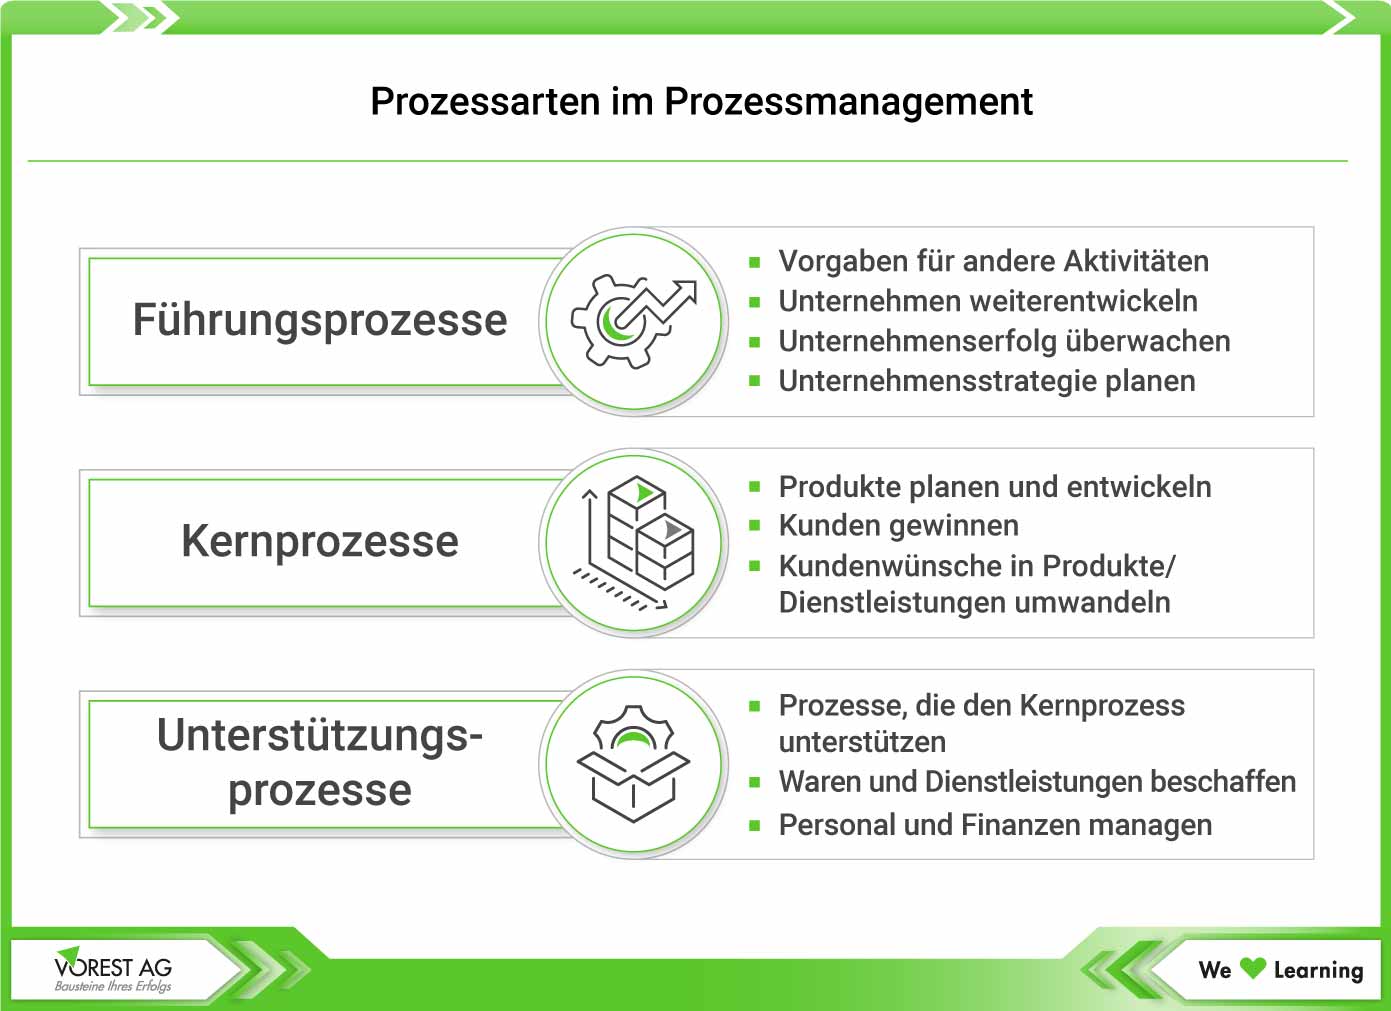 Prozessmanagement - Prozessarten